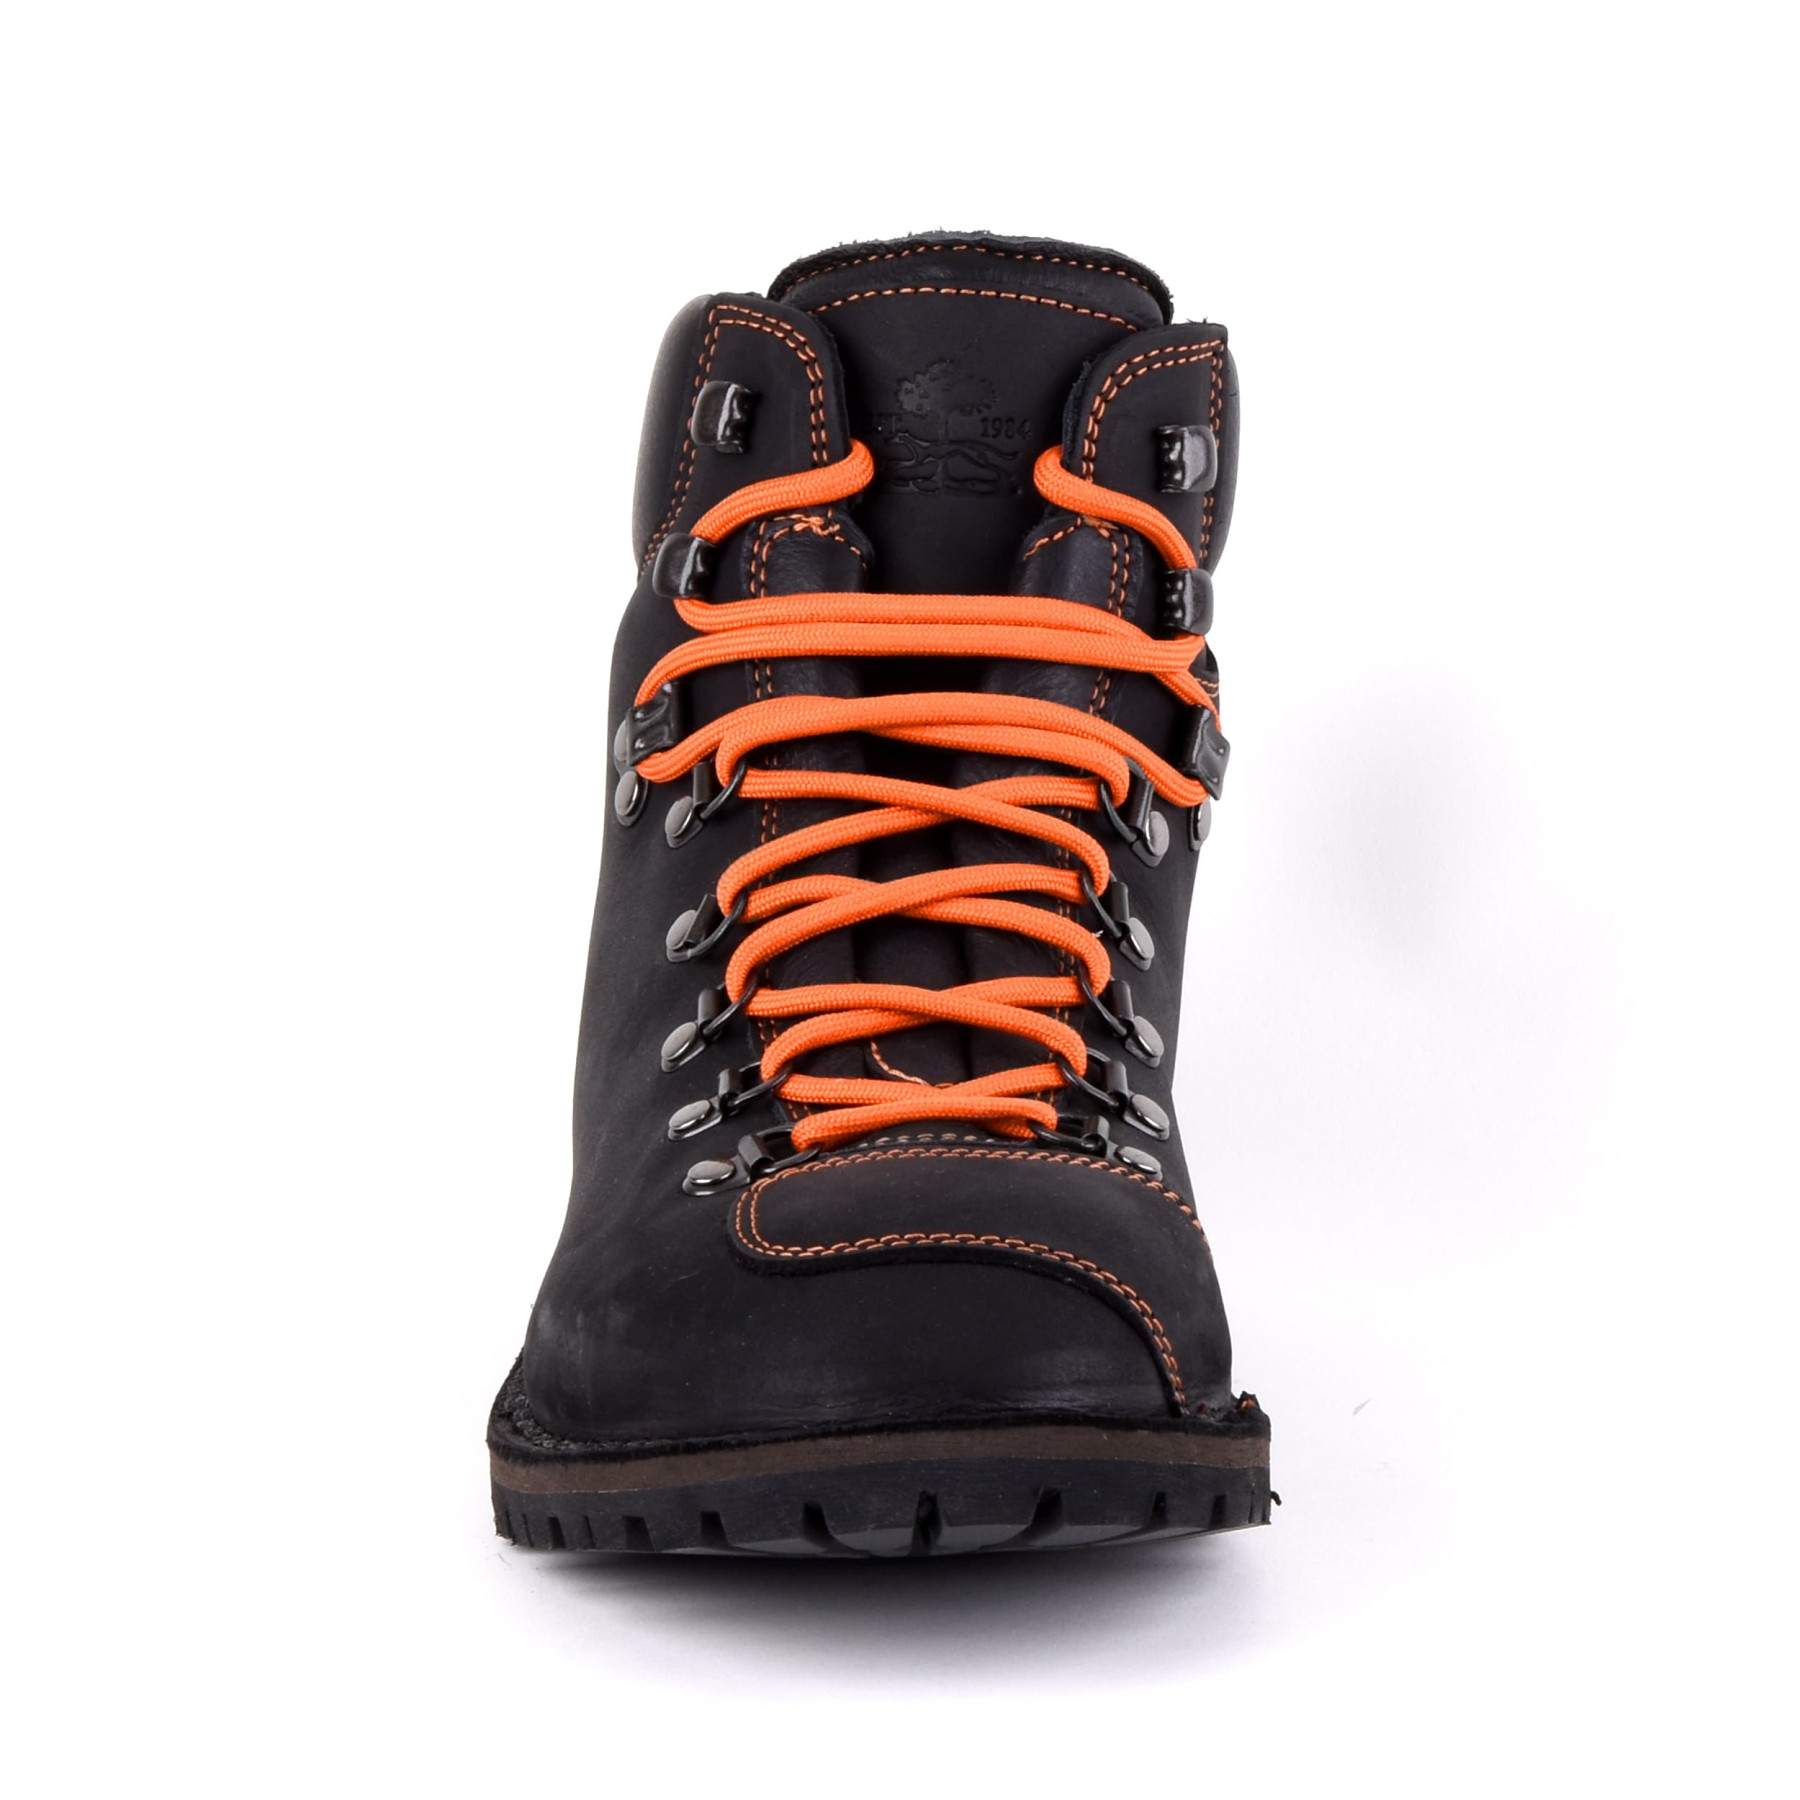 Biker Boot Adventure Denver Black, black gents boot, orange stitching